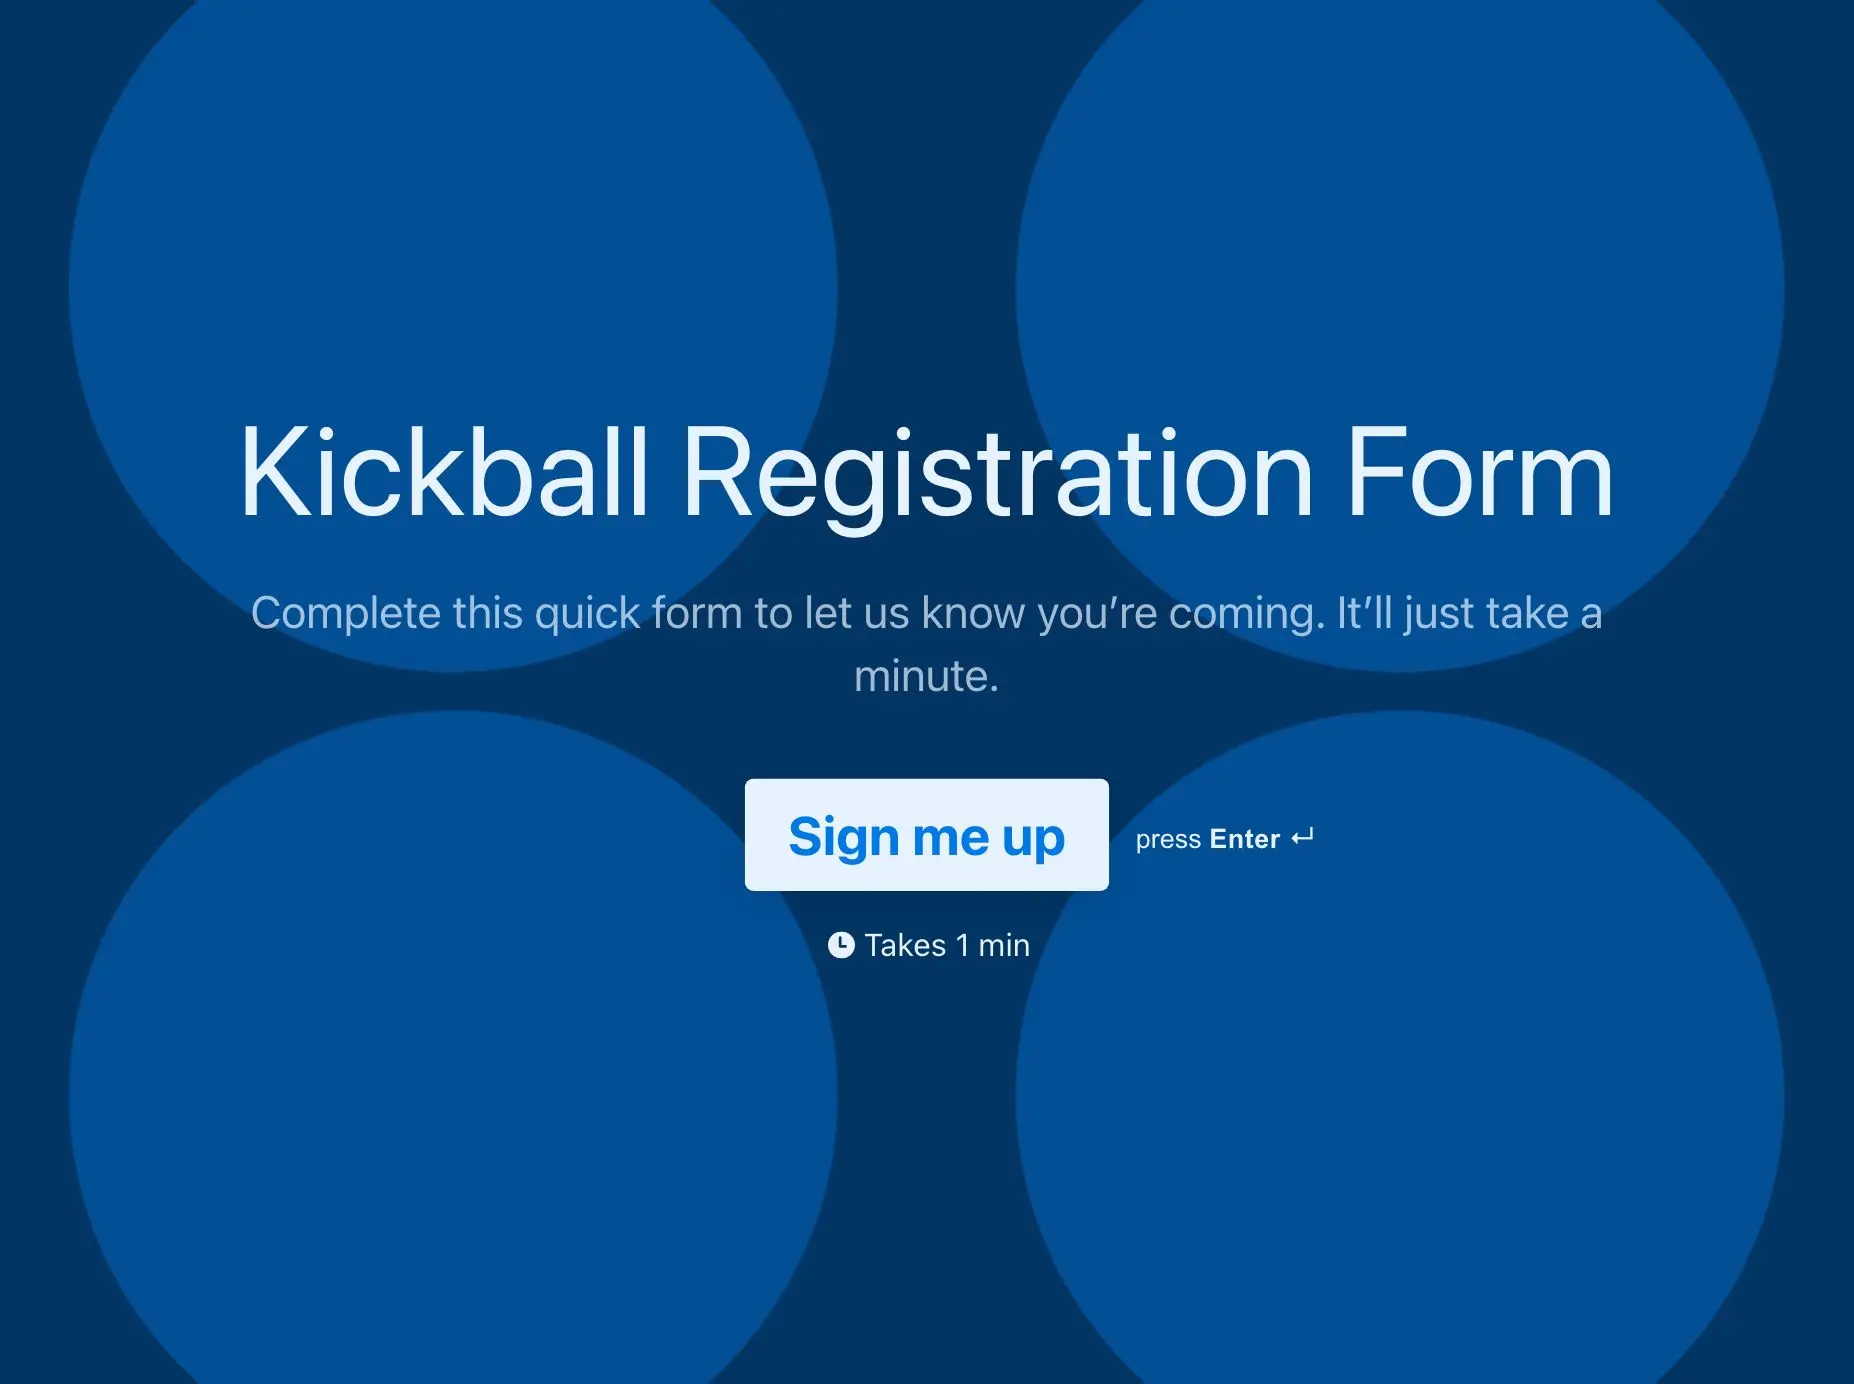 Kickball Registration Form Template Hero